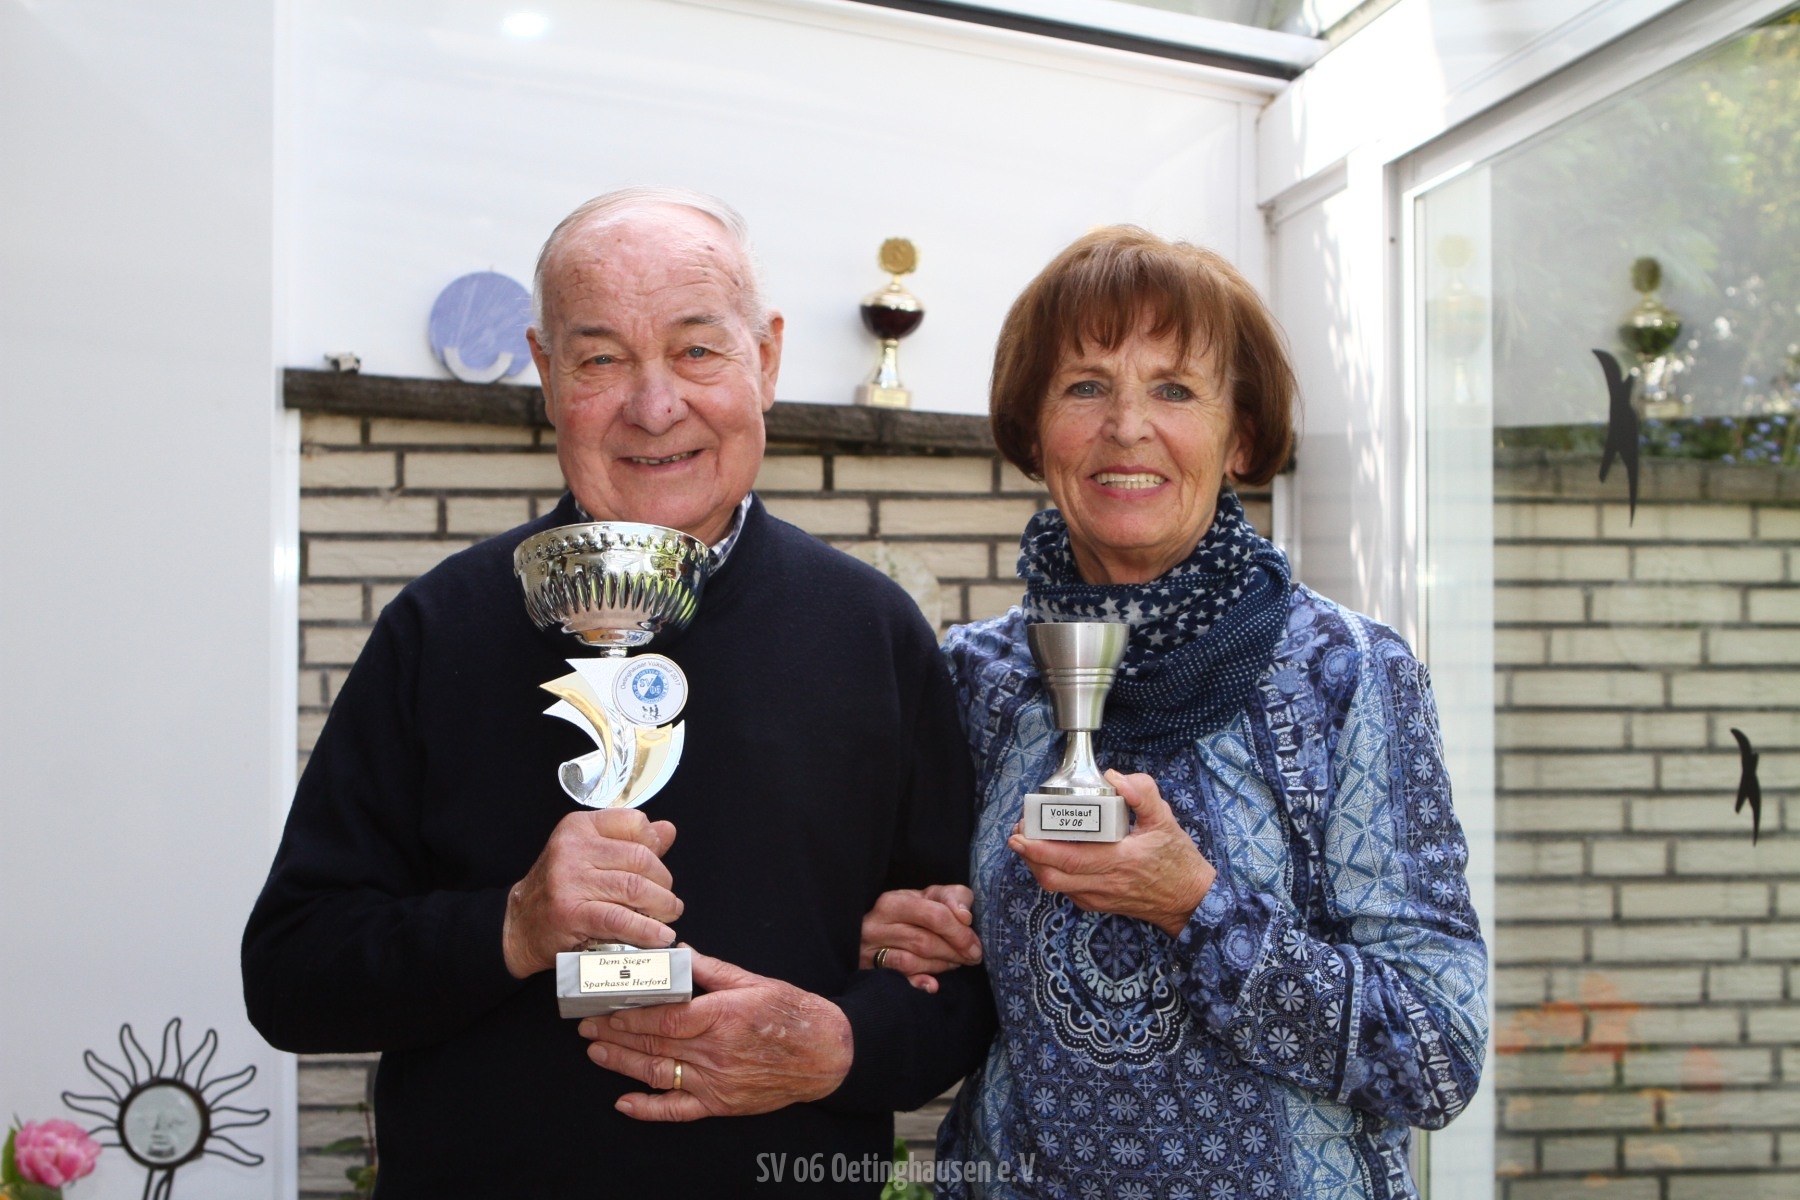 Heinz-Hermann Rieke (l.) mit dem Pokal, der am 25. Mai an den Sieger vergeben wird, Marlies Rieke mit dem Pokal, den sie vor vielen Jahren beim Volkslauf erhielt.